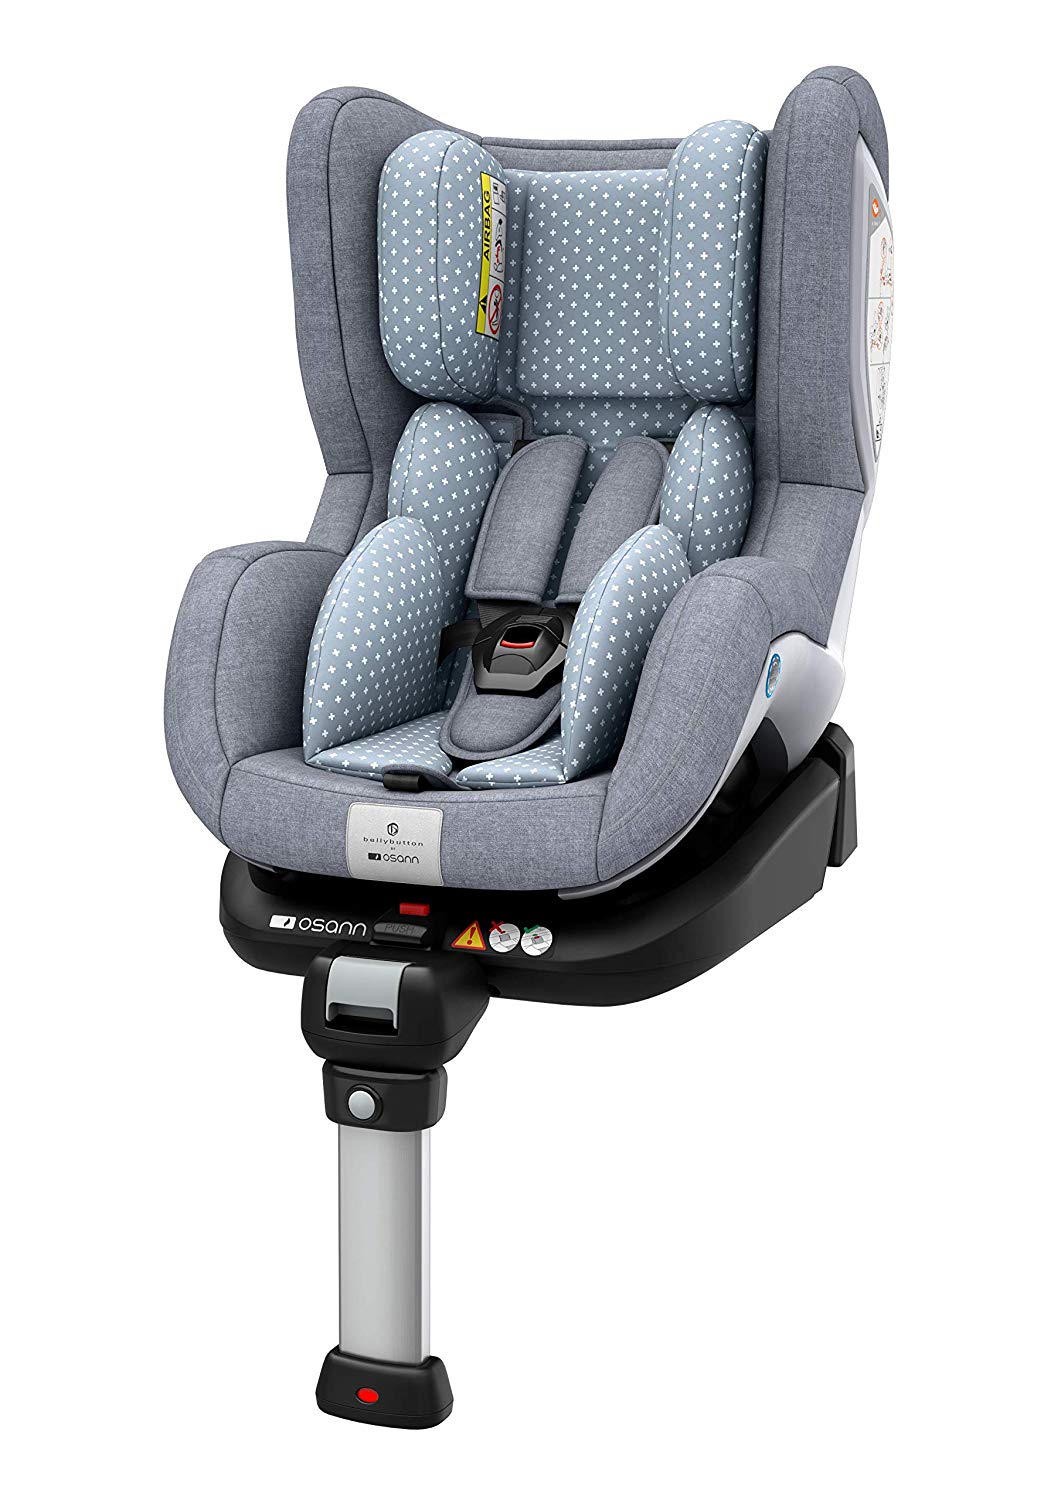 Osann Reboard Fox Isofix Child Seat Group 0+/1, 0-18 kg, 0 to 4 Years ECE R44/04, Flintstone